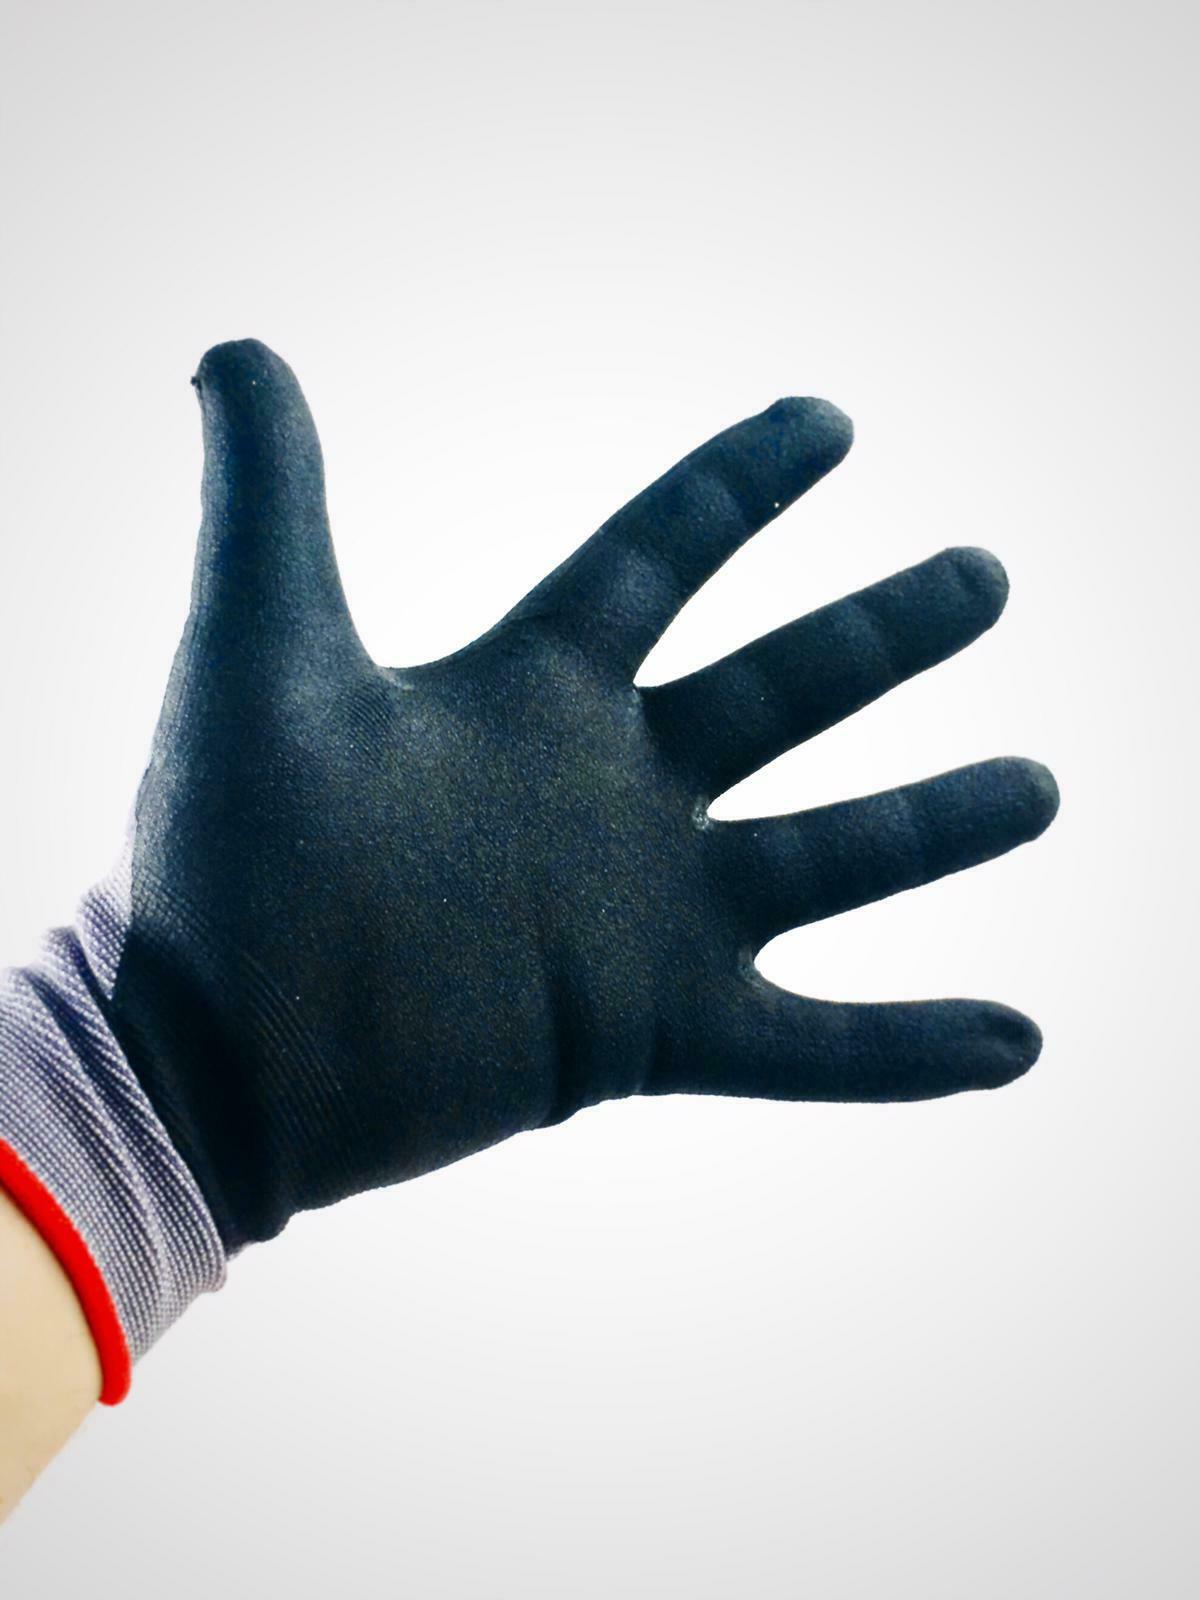 Handschuhe KORSAR® Kori-Nox grau-schwarz, Menge: 12 Paar, Größe: 10/XL